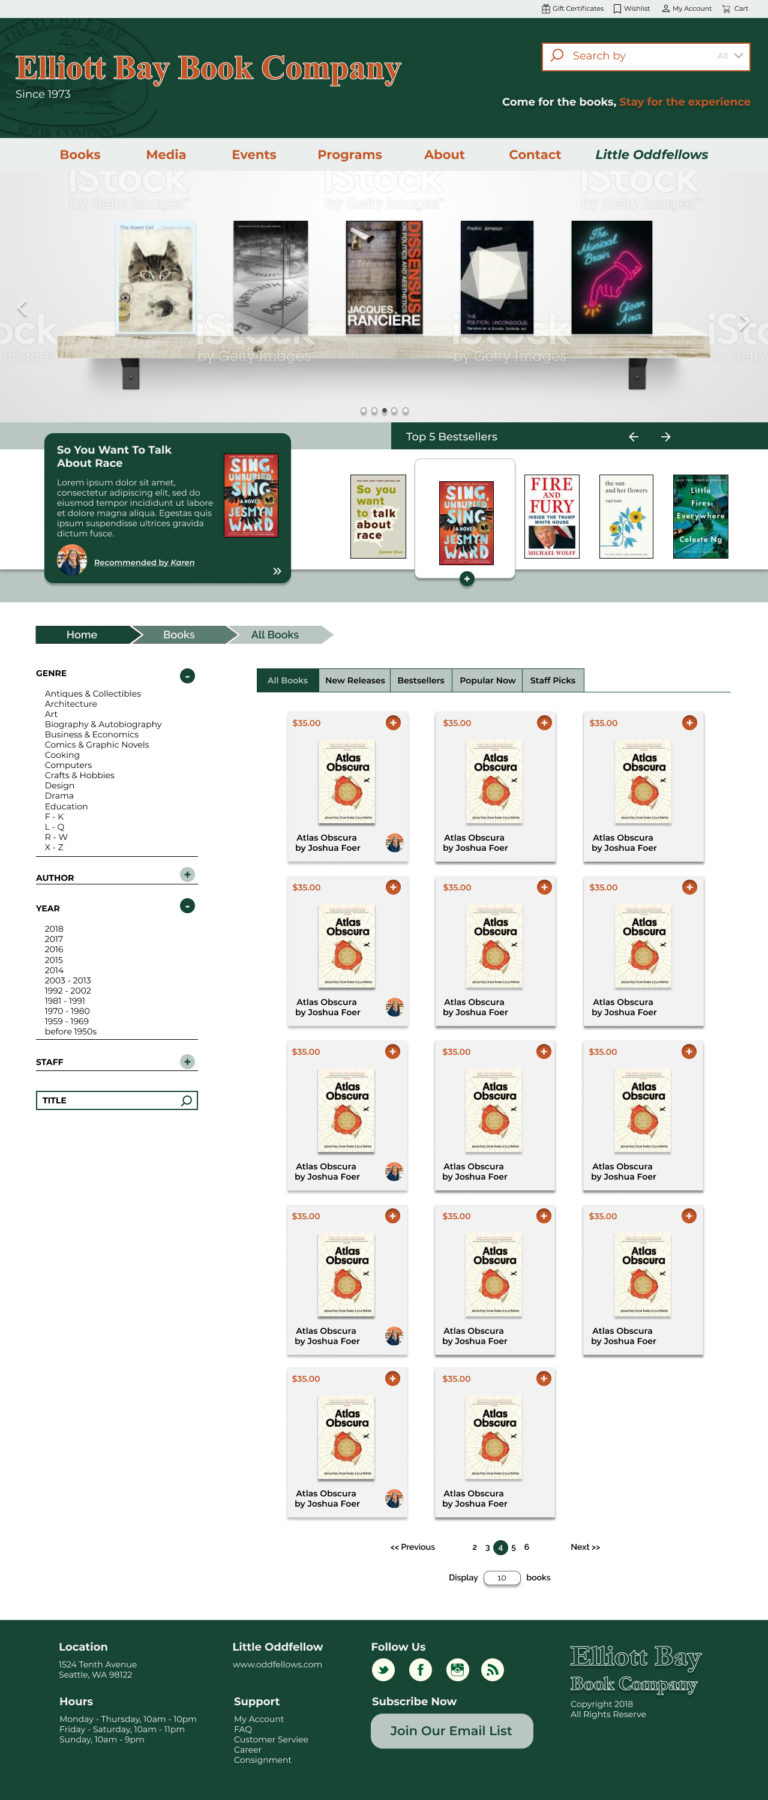 EBBC Books Page Visual Design